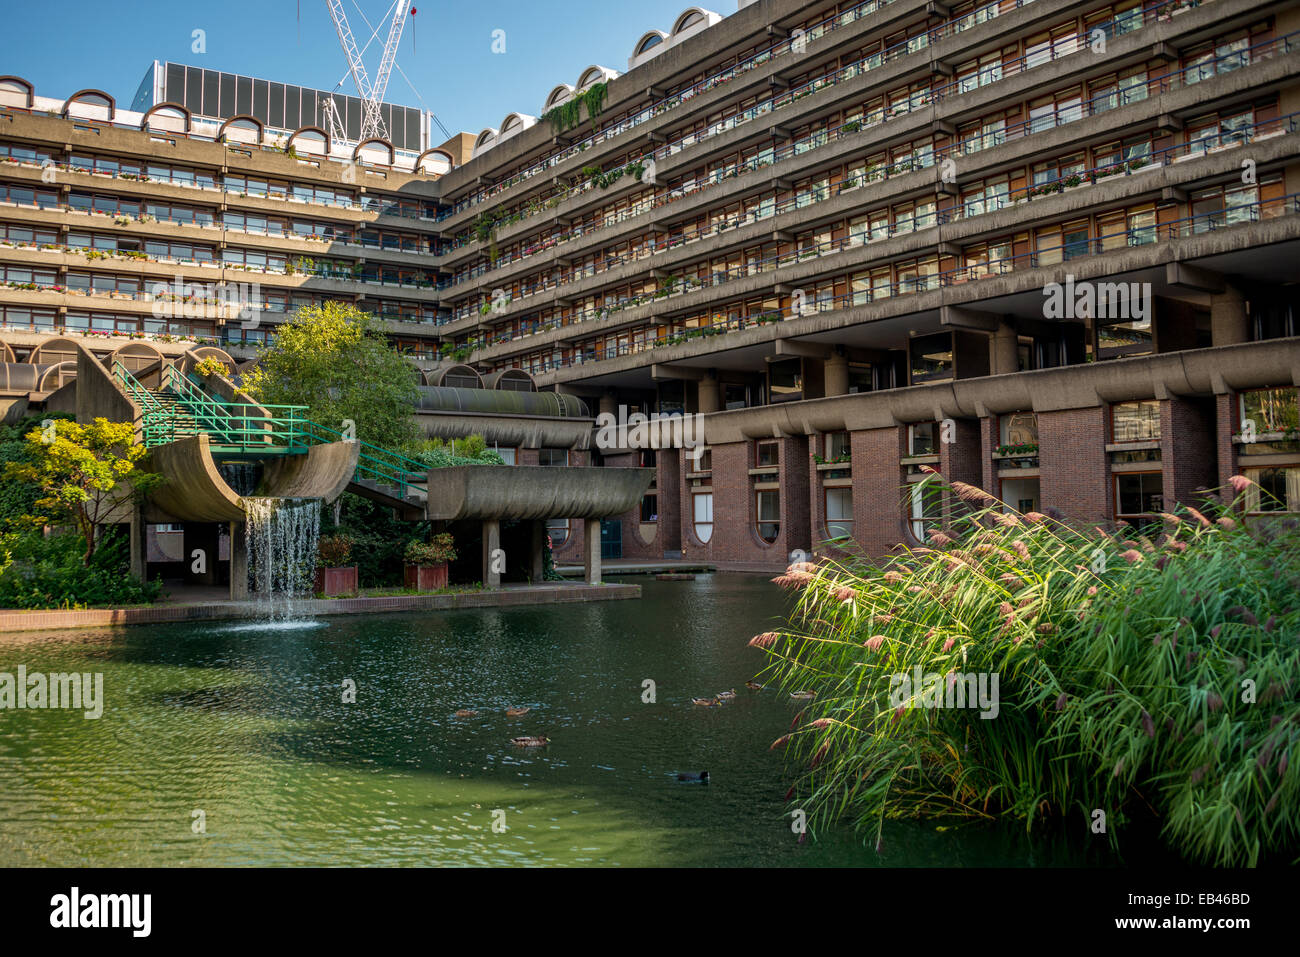 Die Barbican Estate ist eine Wohnsiedlung erbaut in den 1960er und den 1970er Jahren in der Londoner City, in einem Bereich einmal verheerende Stockfoto